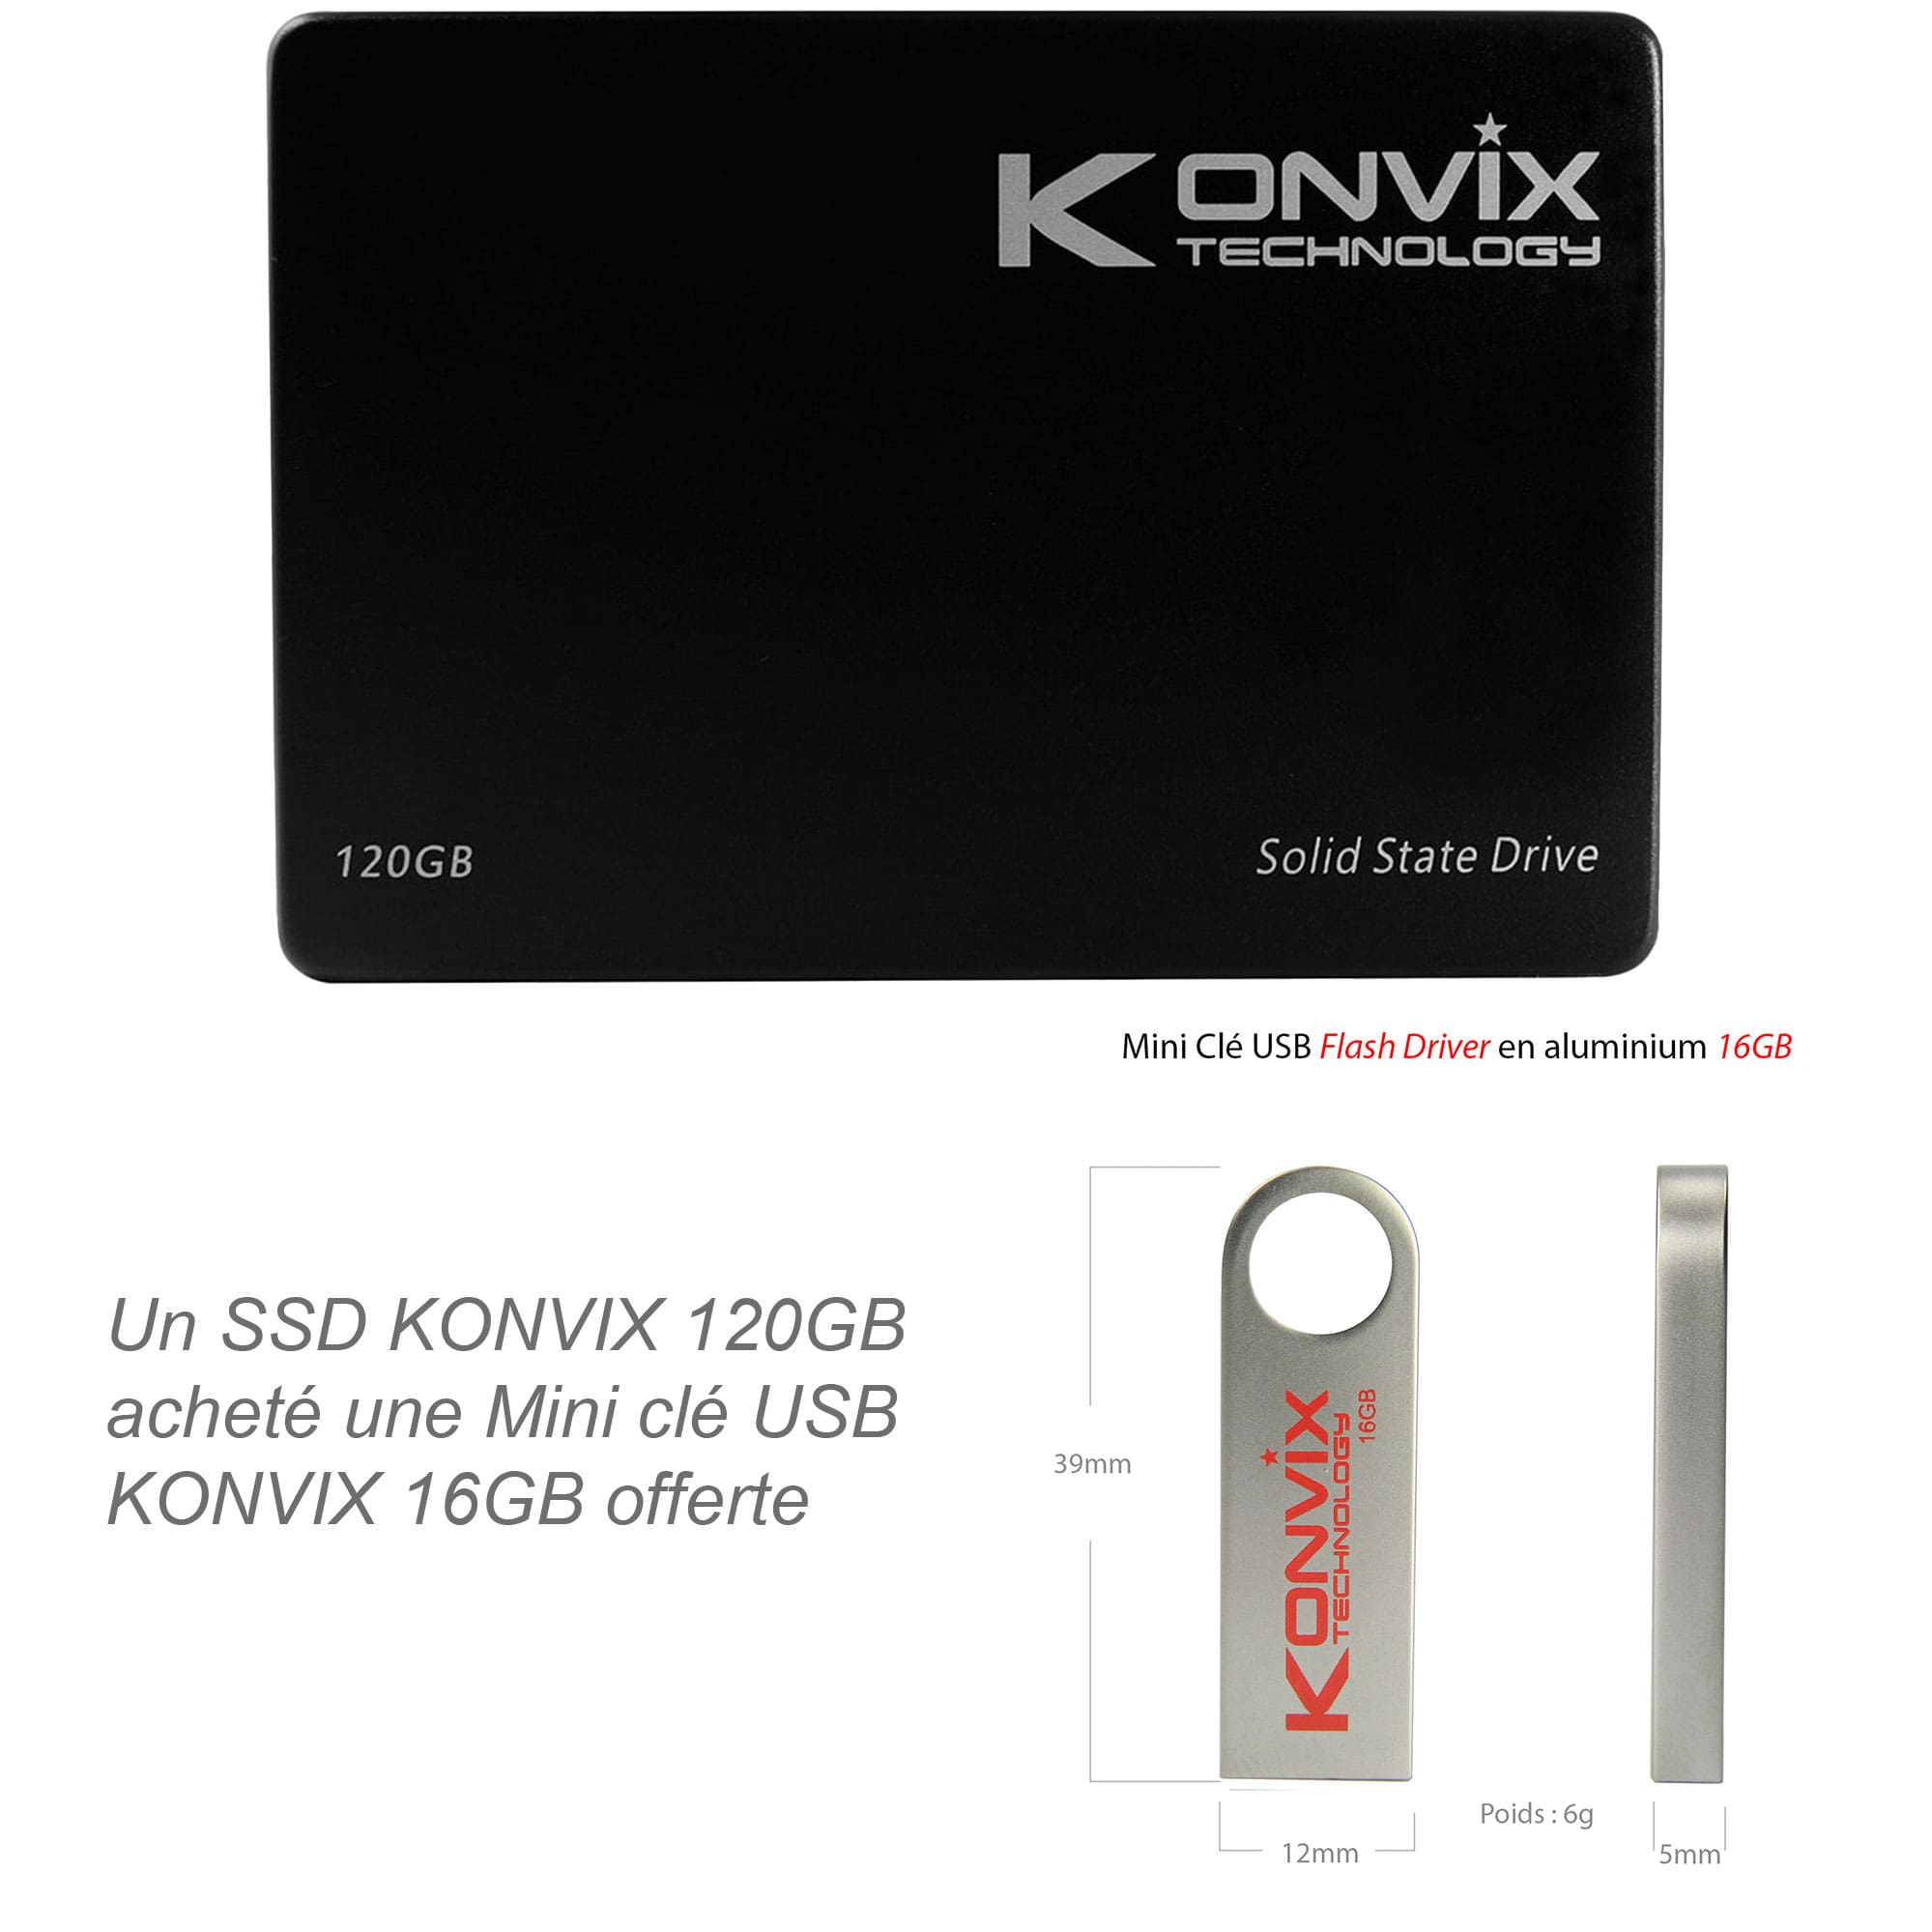 SSD Konvix 120GB SATA3 6Gb/s des technologies de stockage à l'état solide.